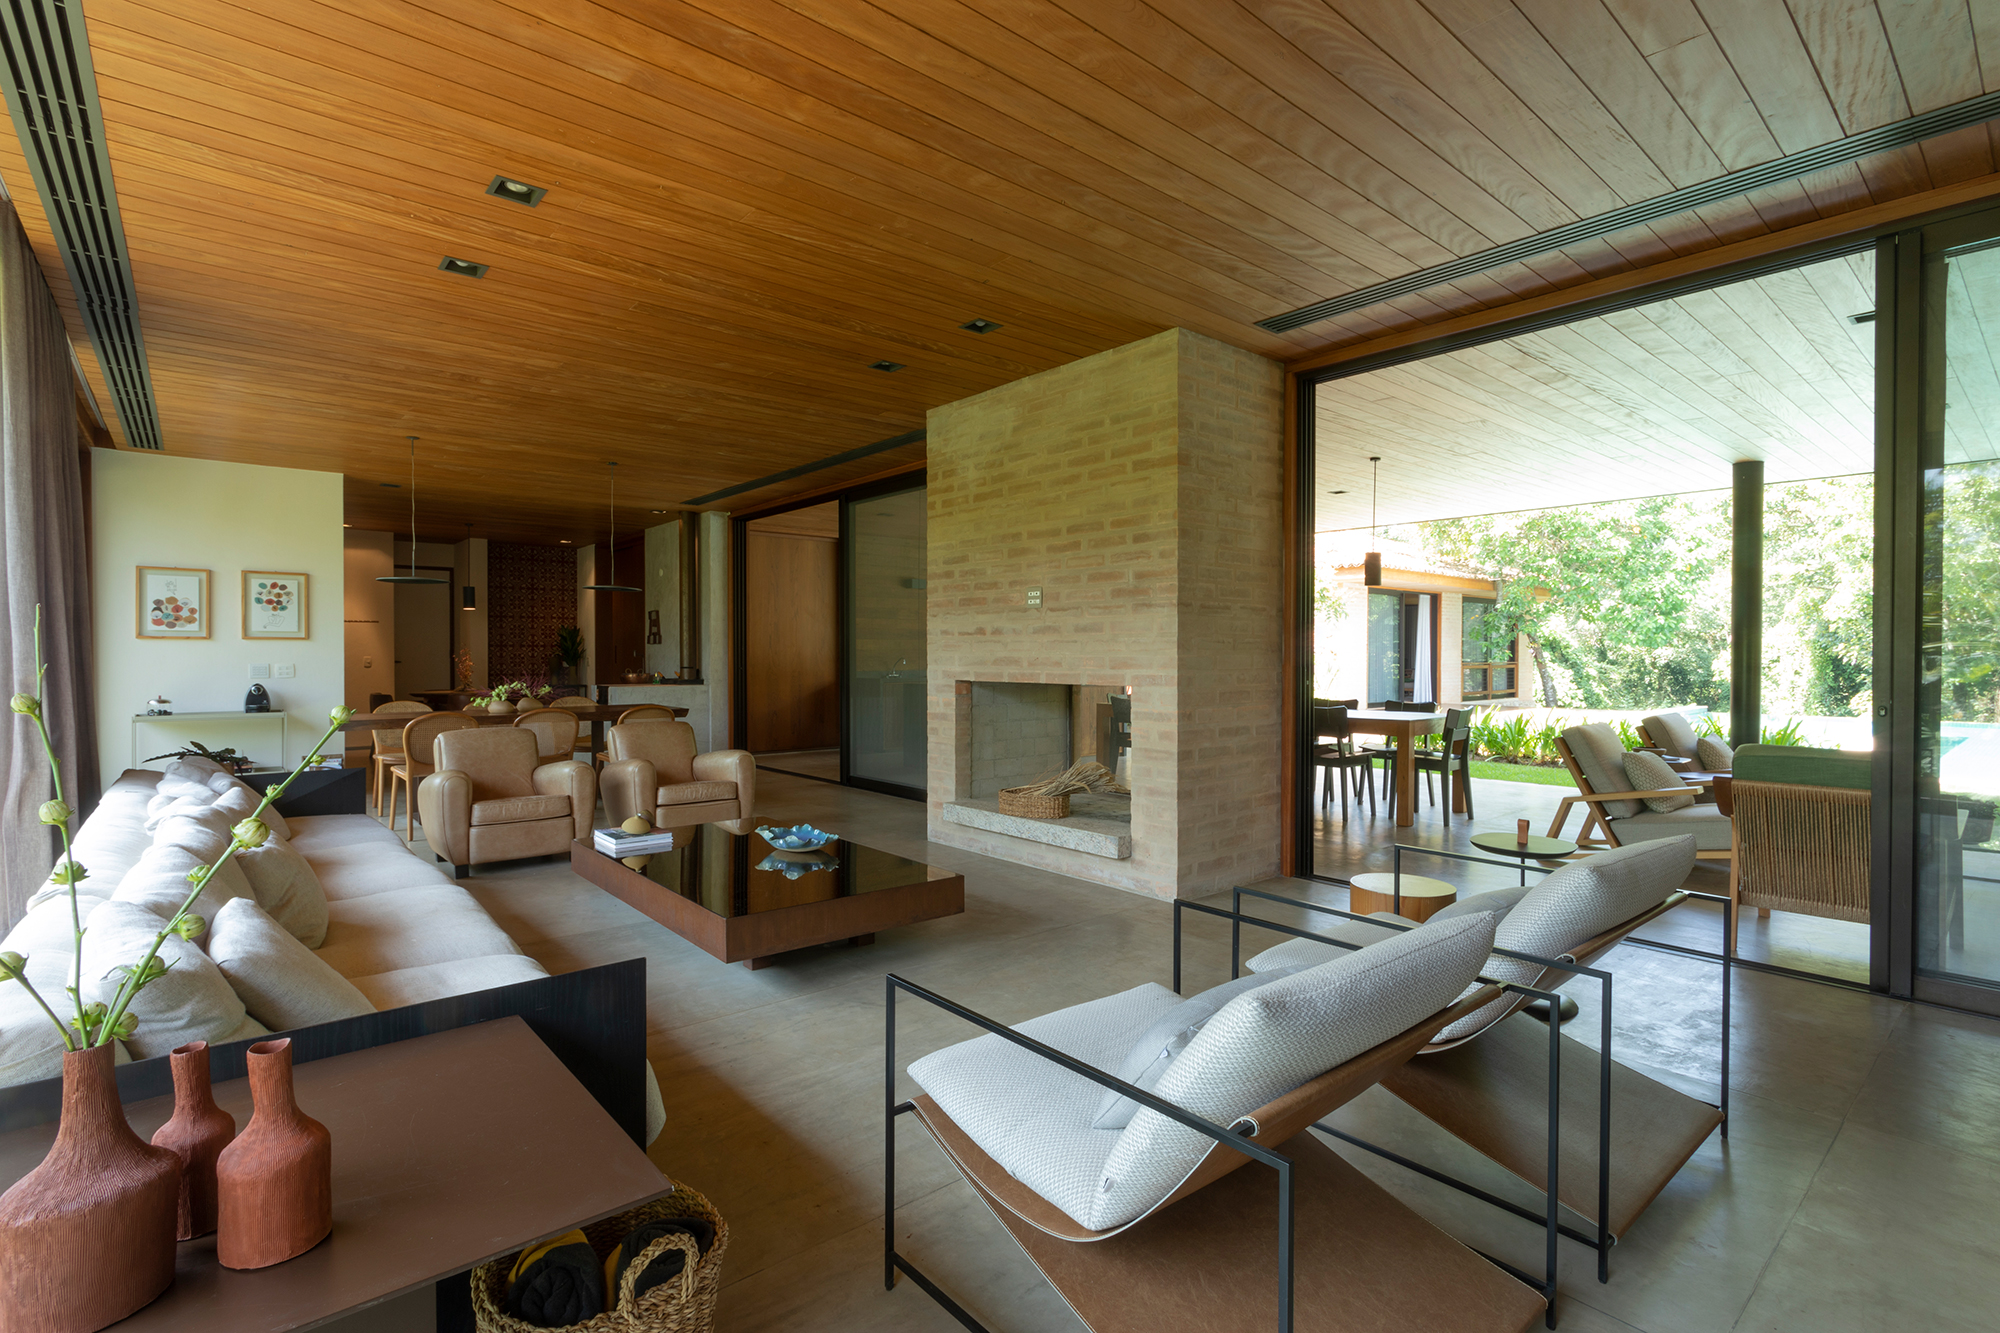 Casa de campo de 818 m² é um verdadeiro refúgio em meio à natureza. Projeto de Daniel Fromer. Na foto, varanda e sala com lareira, vista para o jardim e sofás.